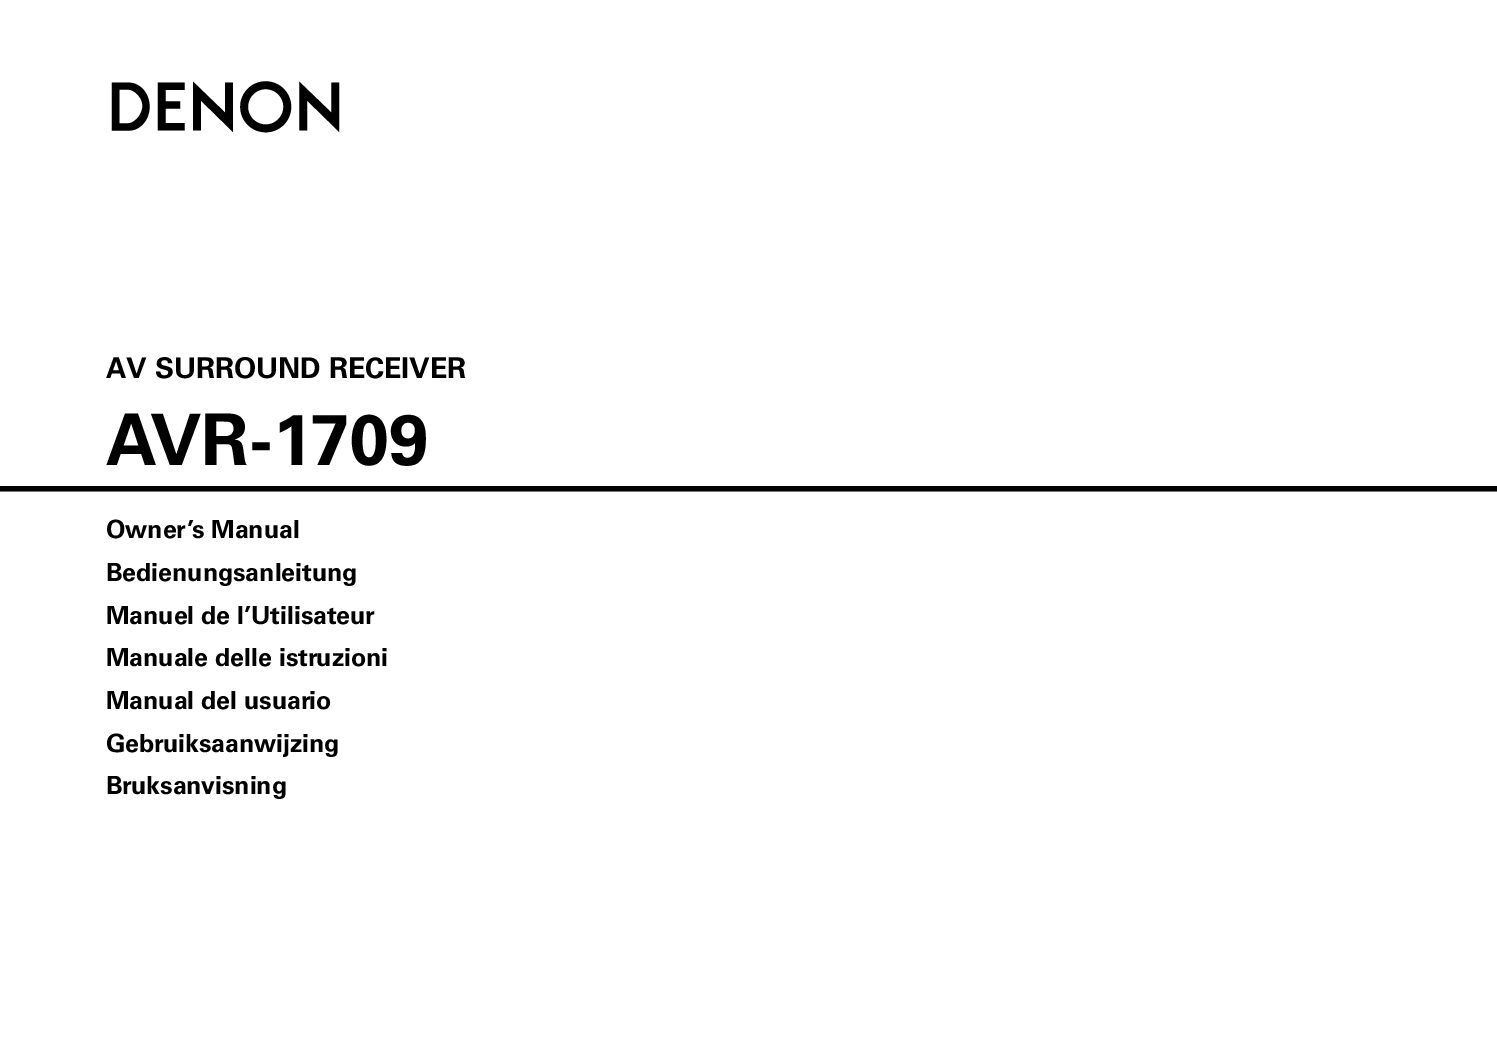 Denon AVR-1709 Bedienungsanleitung